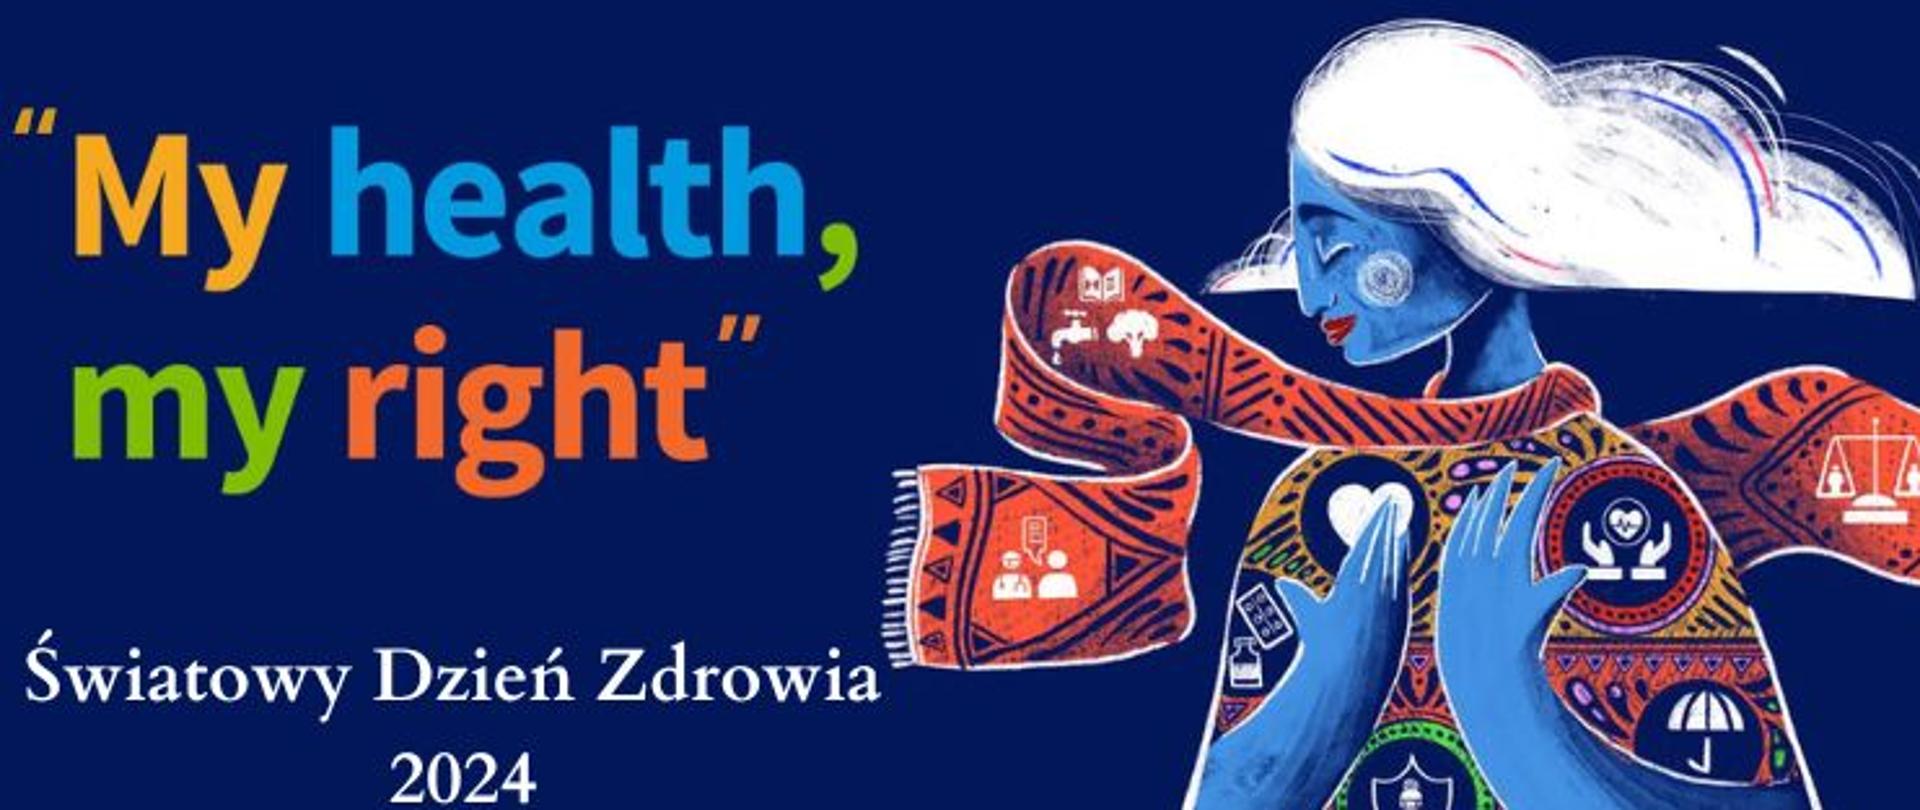 Grafika na granatowym tle z napisem "My health, mi right Światowy Dzień Zdrowia 2024". Po prawej stronie postać kobiety, na które odzieży znajdują się priorytety zdrowia publicznego. 